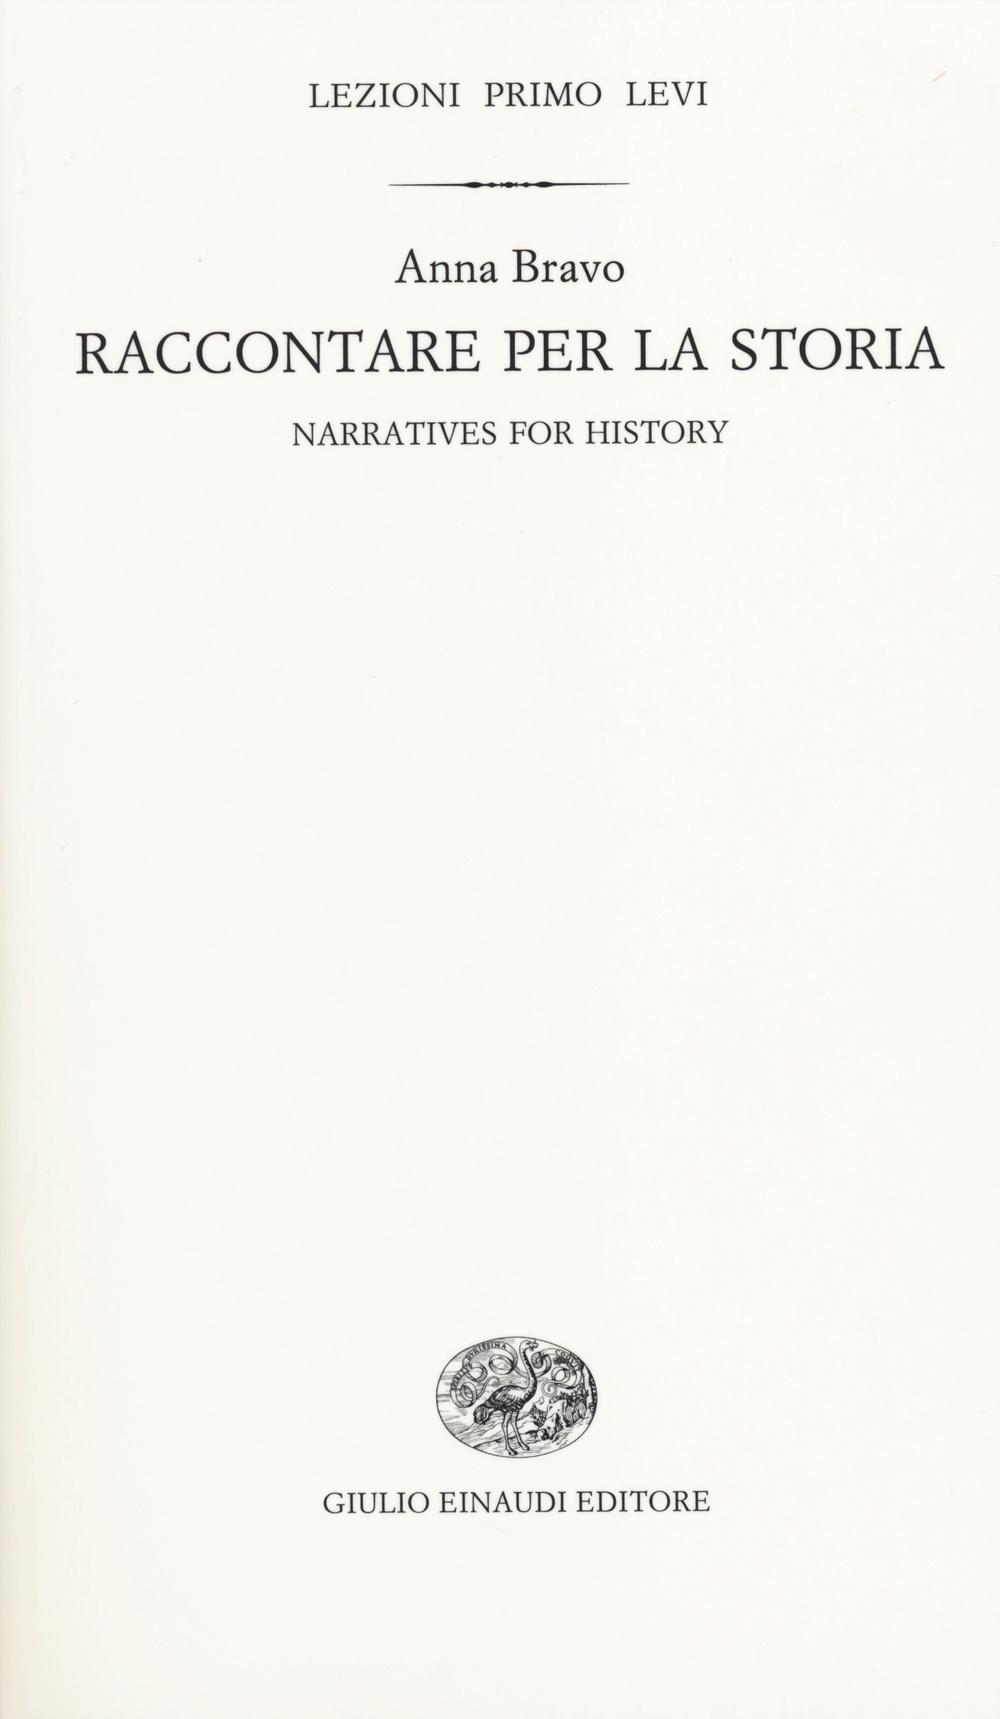 Raccontare per la storia-Narratives for history. Ediz. bilingue